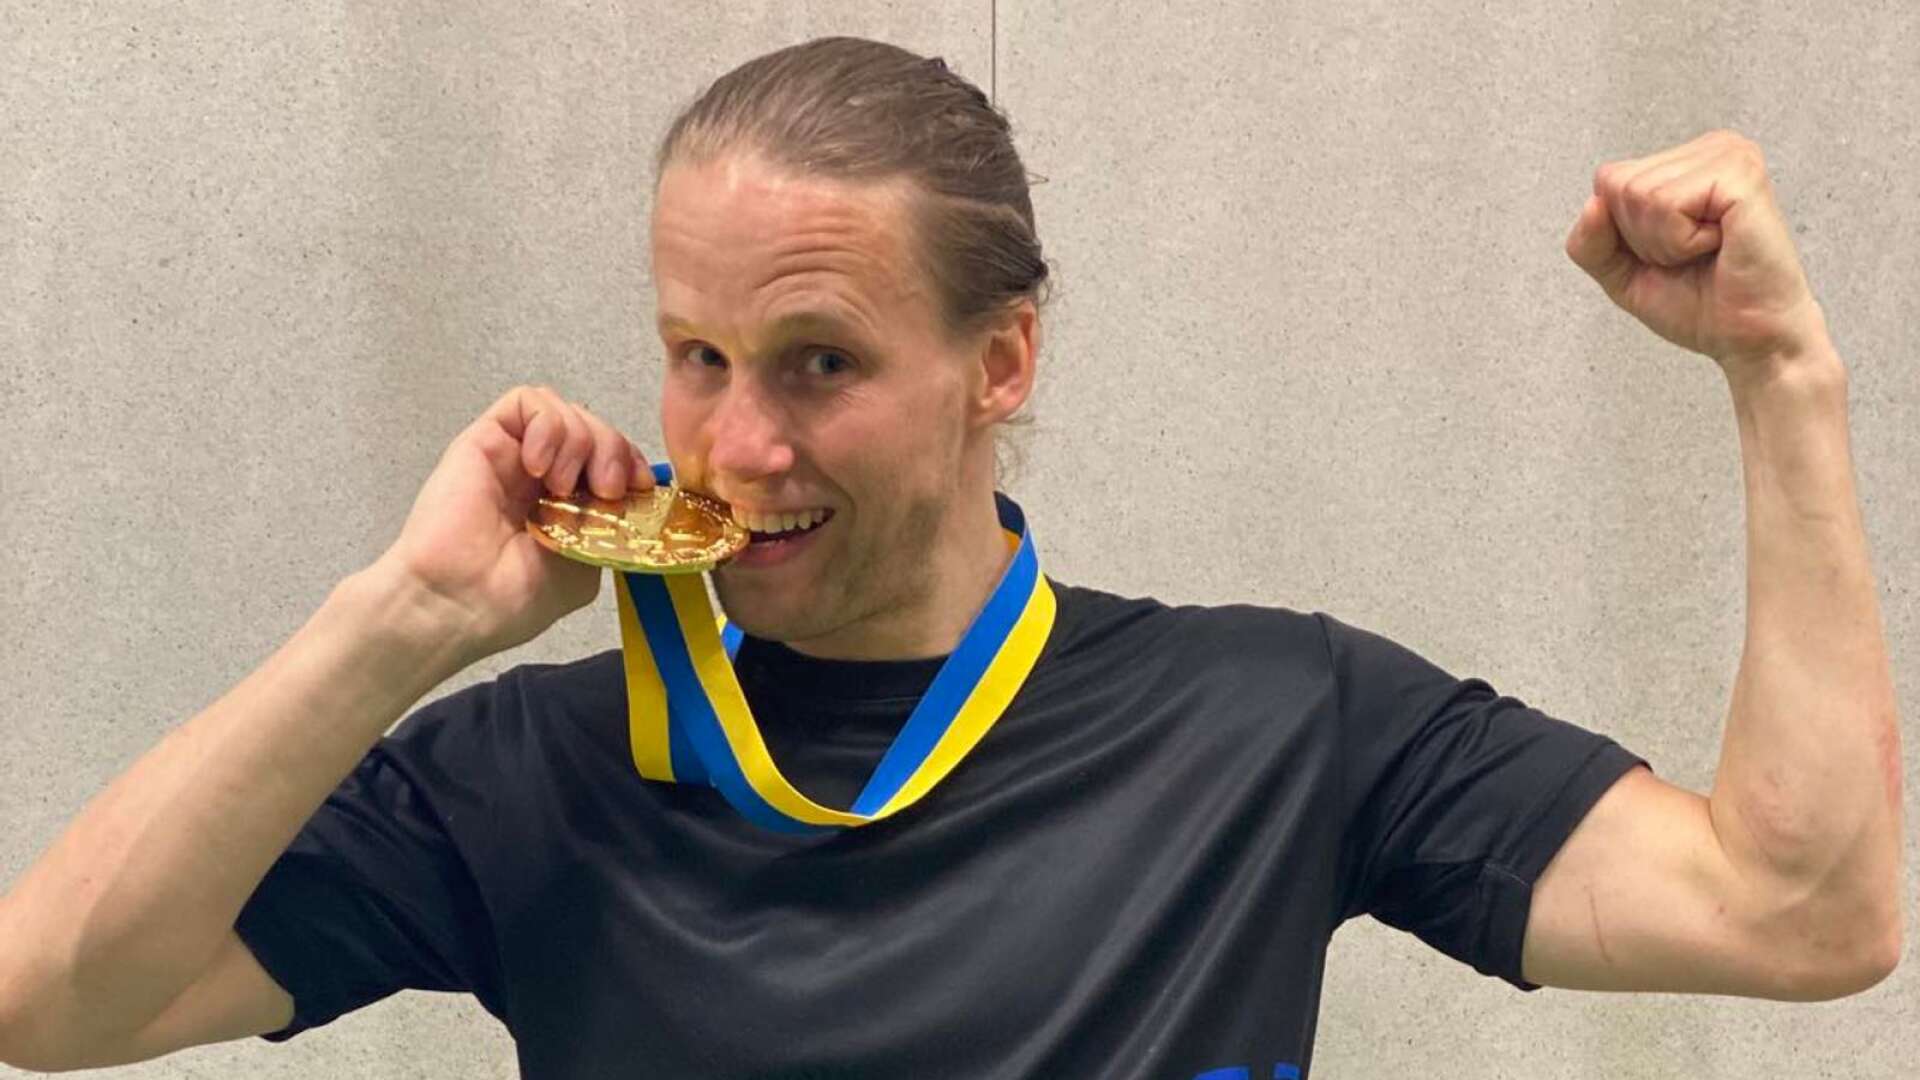 Fengersforsbördige Torbjörn Dalstrand vann under helgen SM-guld i kickboxning i klassen –69 kilo kicklight.